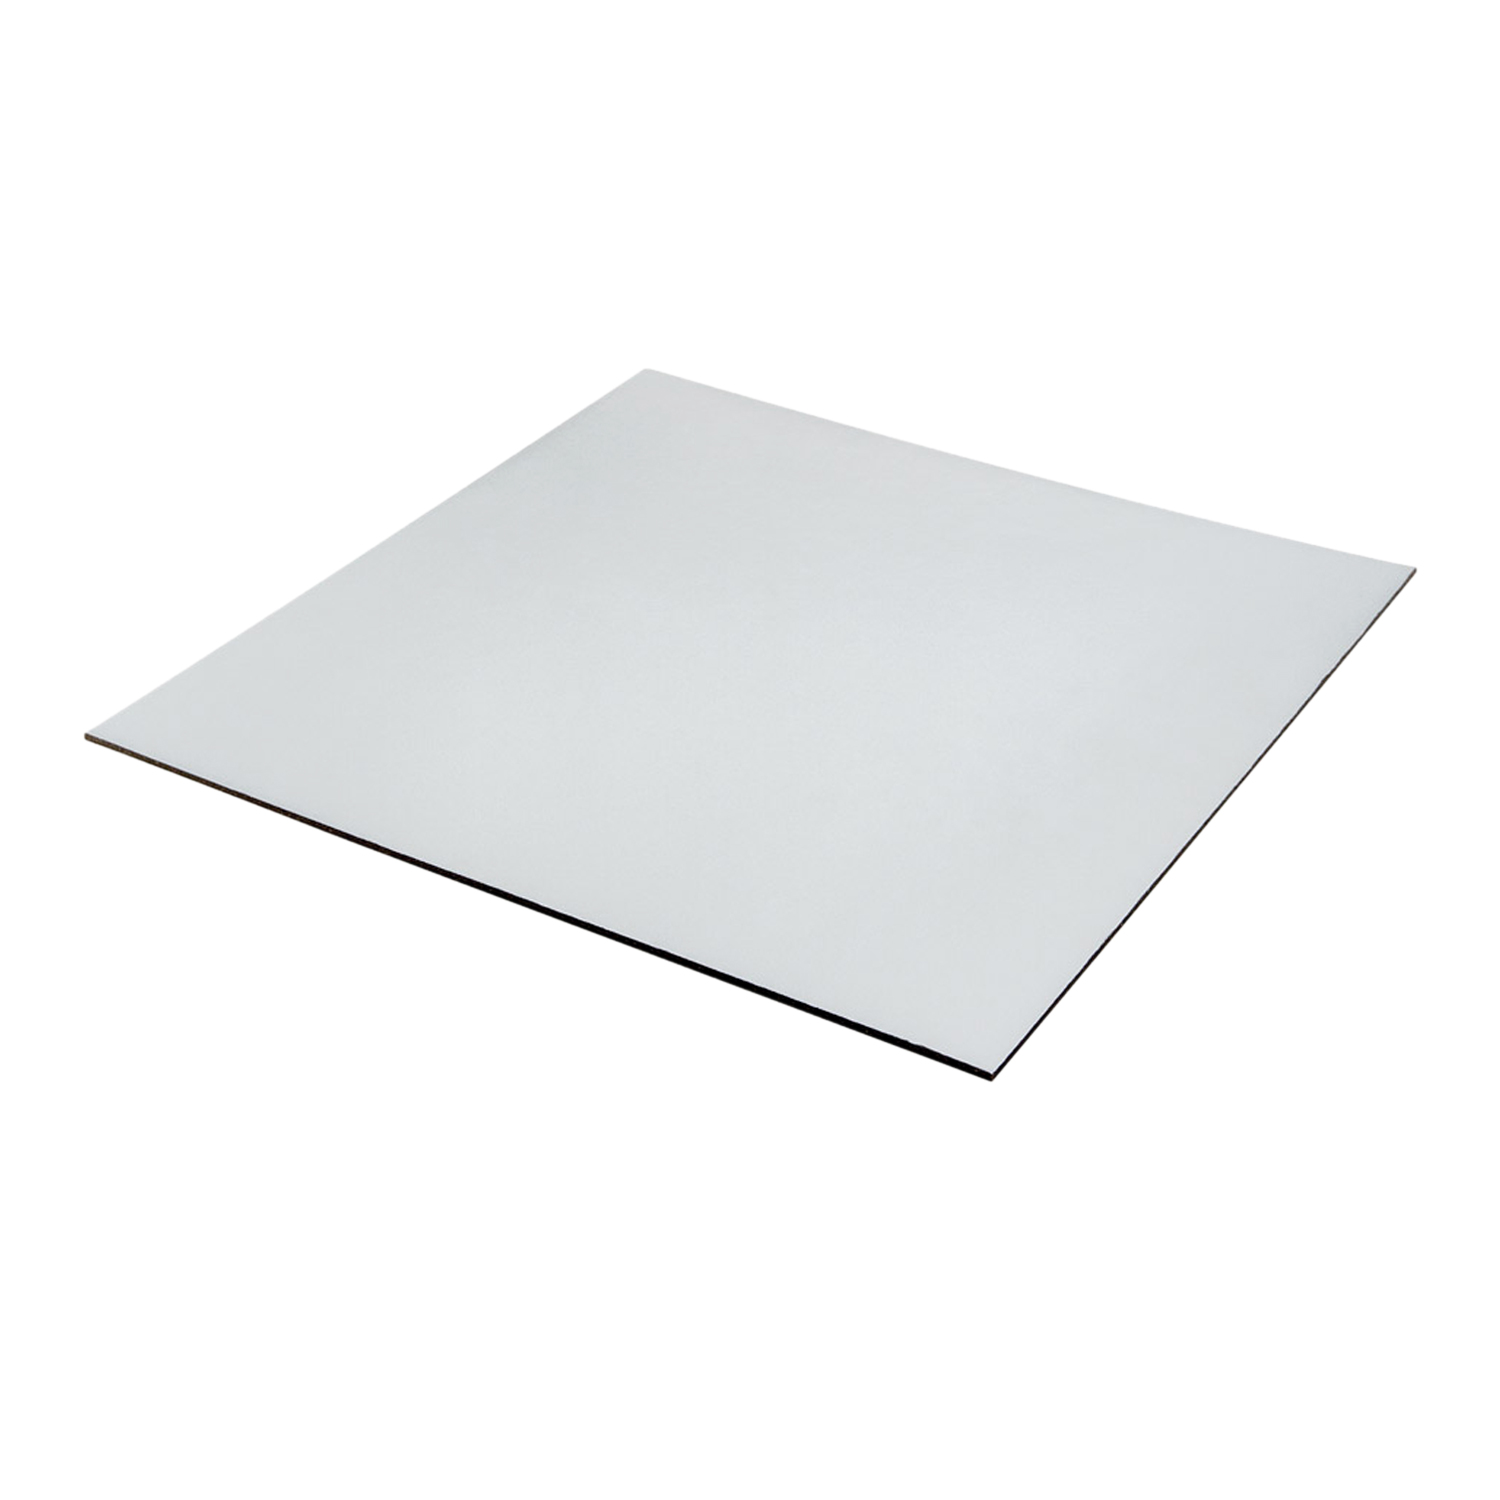 Cake Board (8 Inch), Silver Colour Square Shape